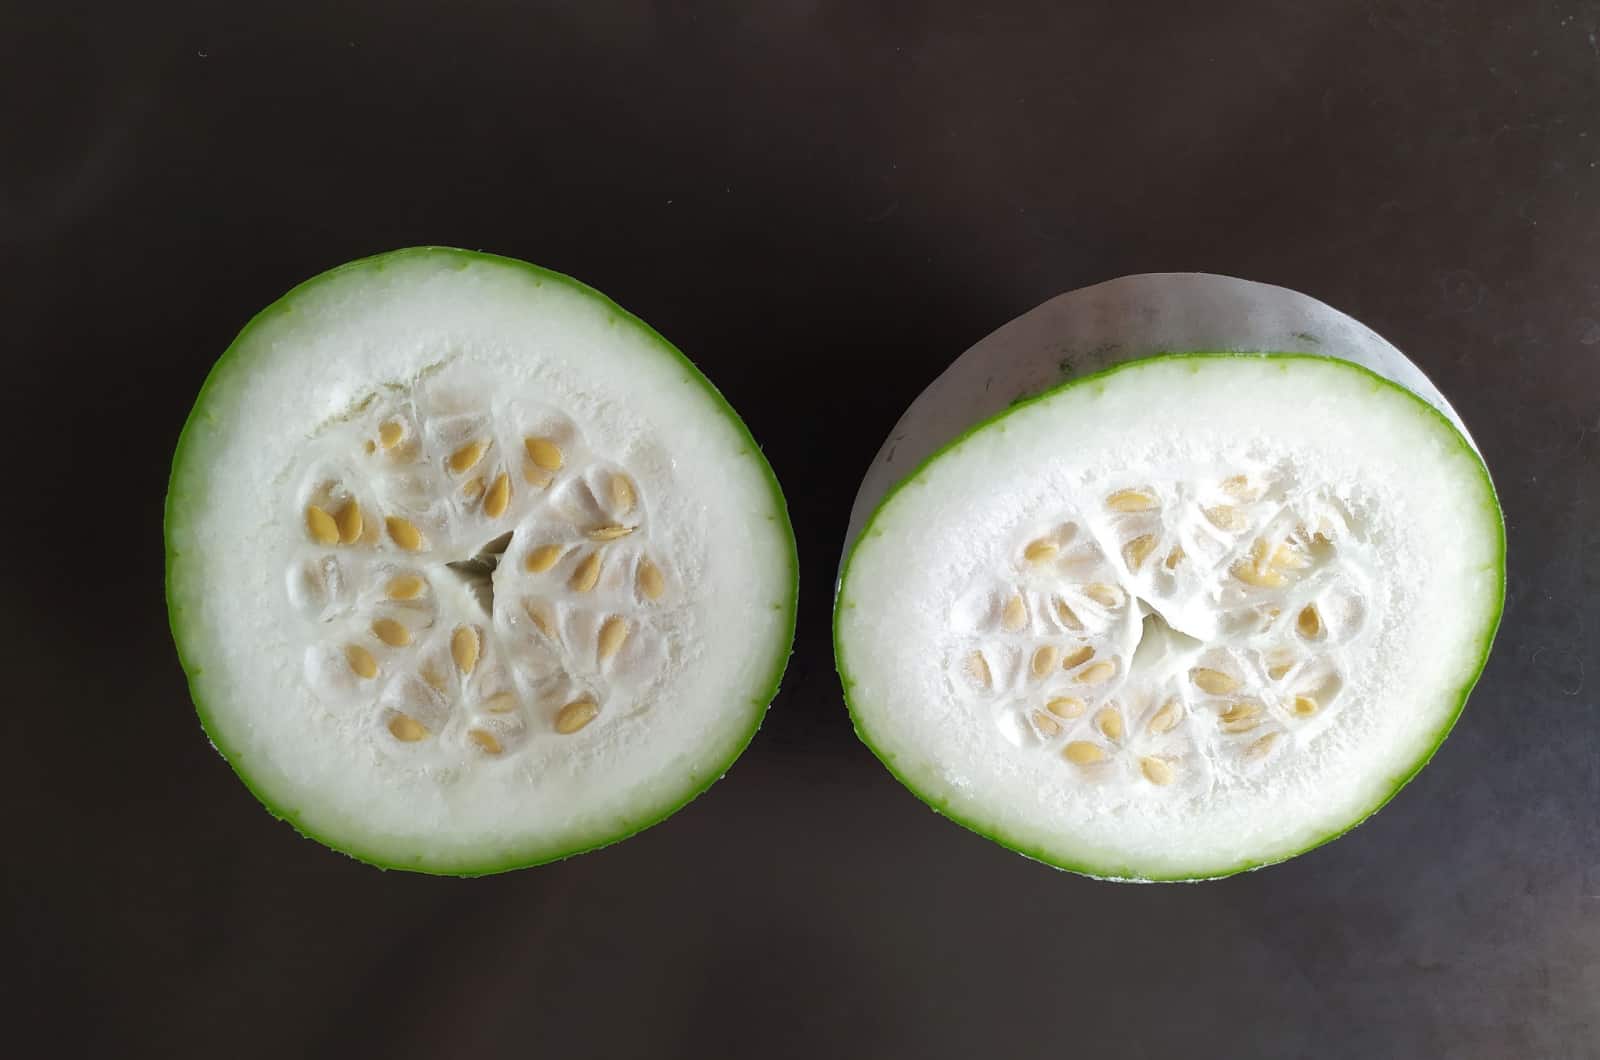 sliced winter melon